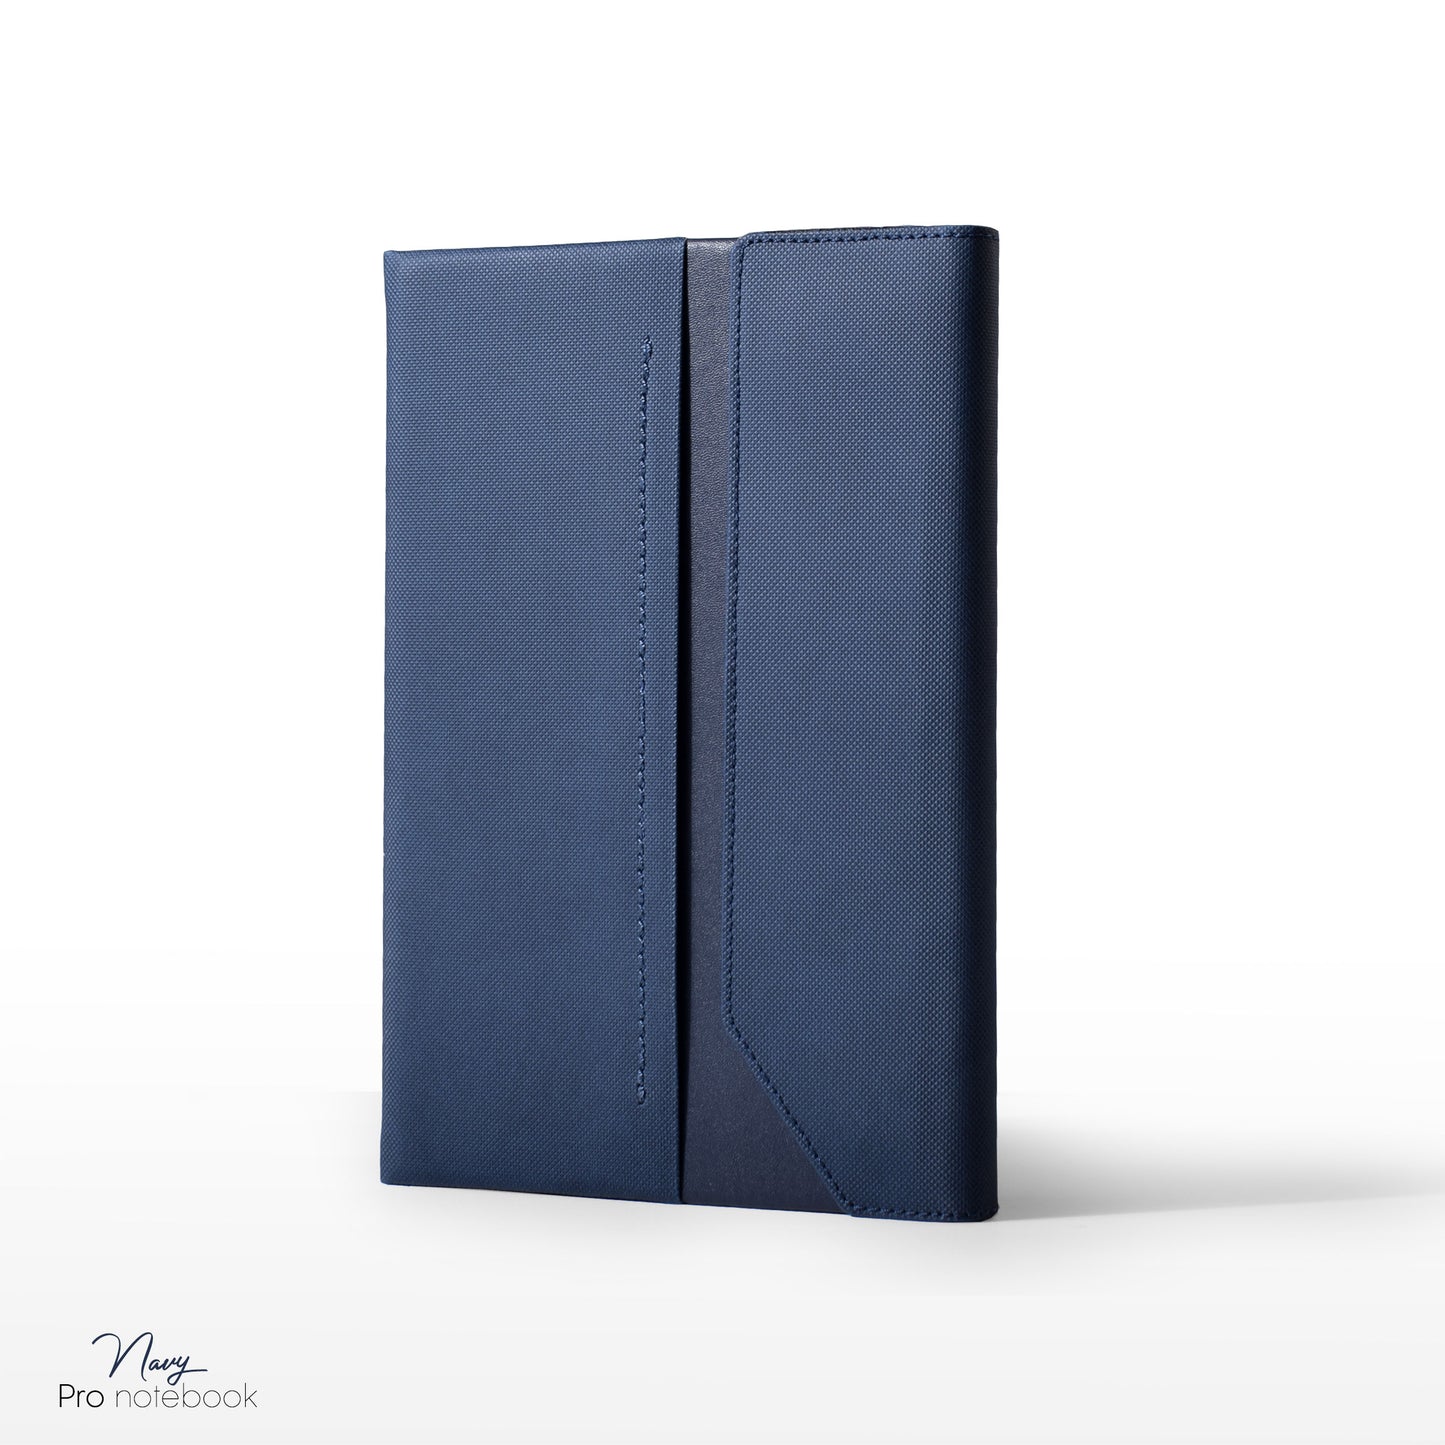 Navy pro notebook